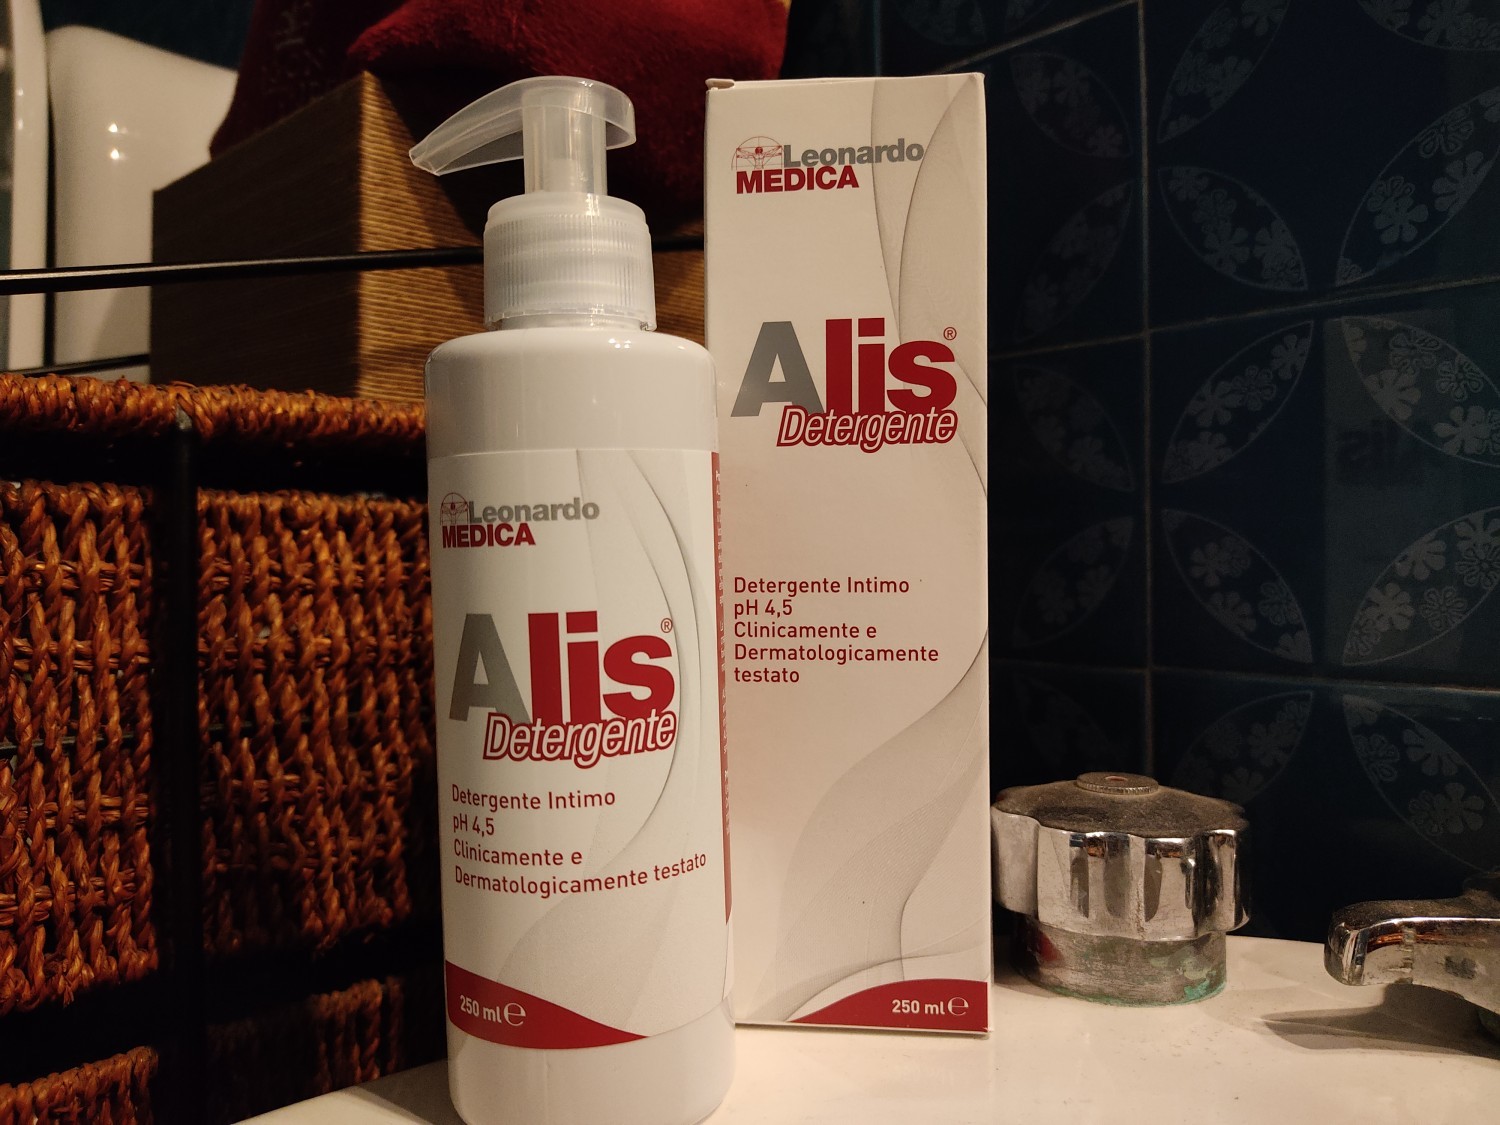 Detergente Alis